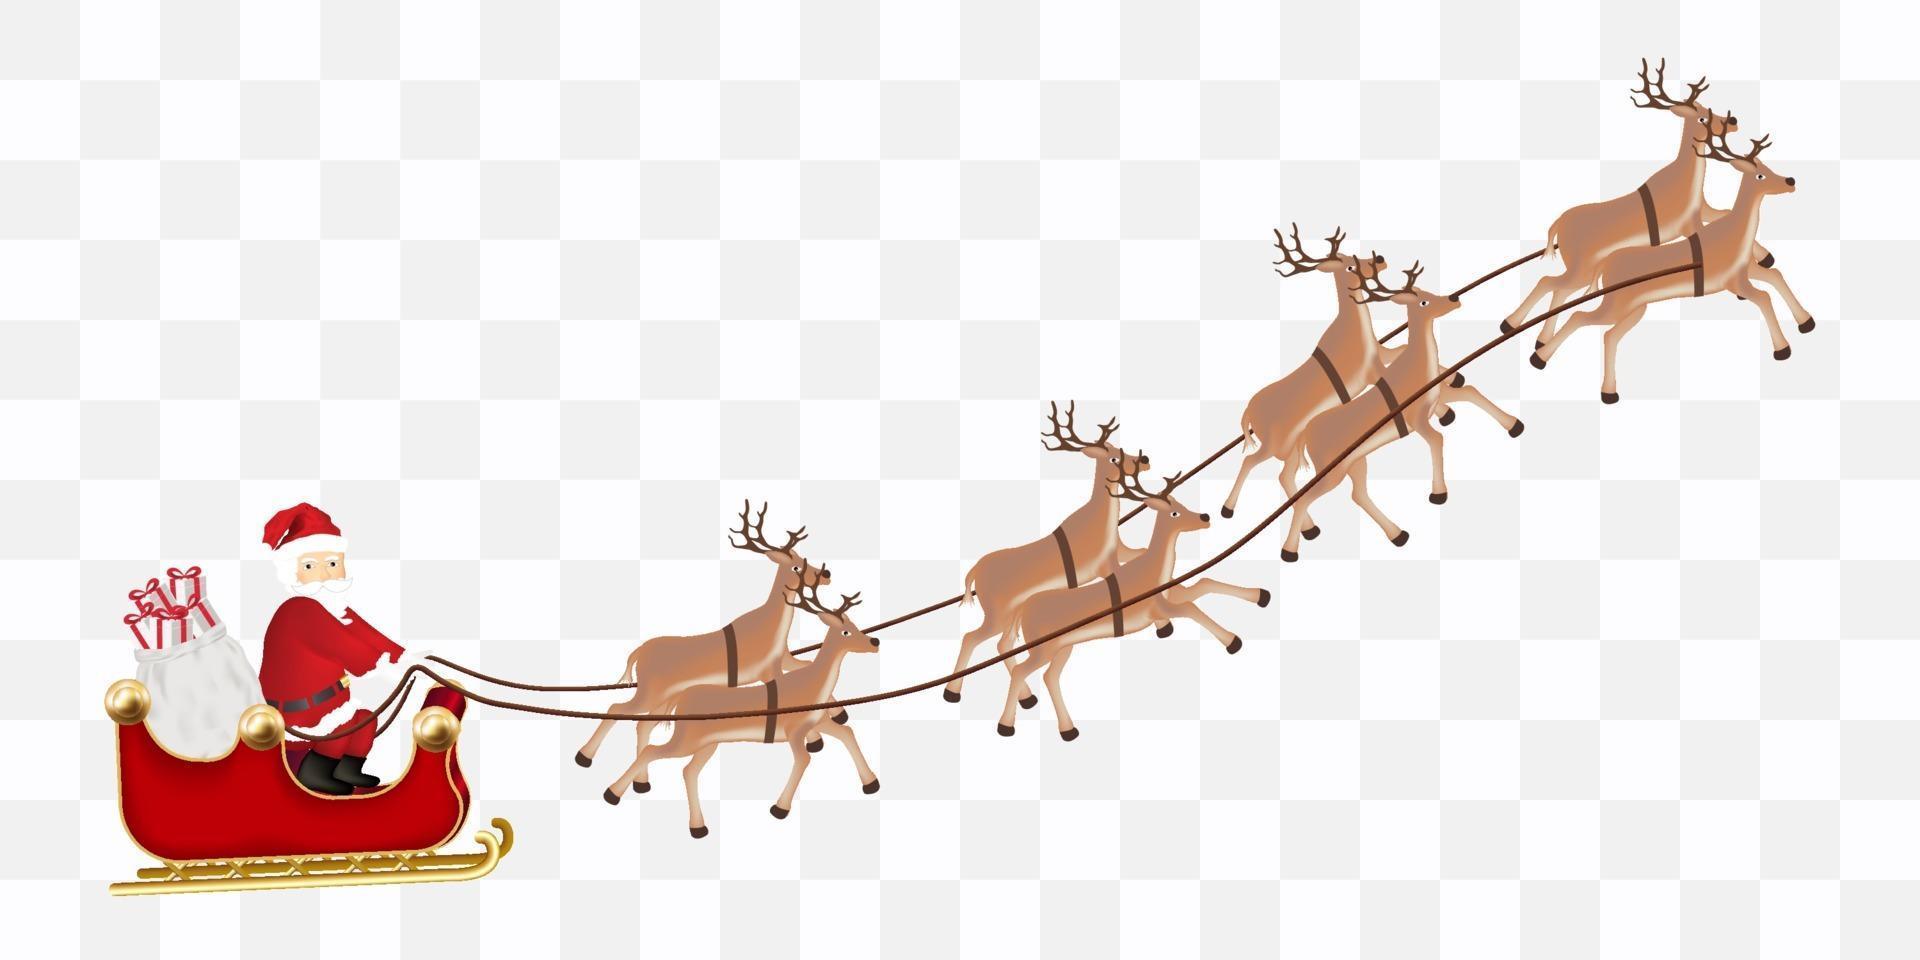 jultomten med renar flyger vektor